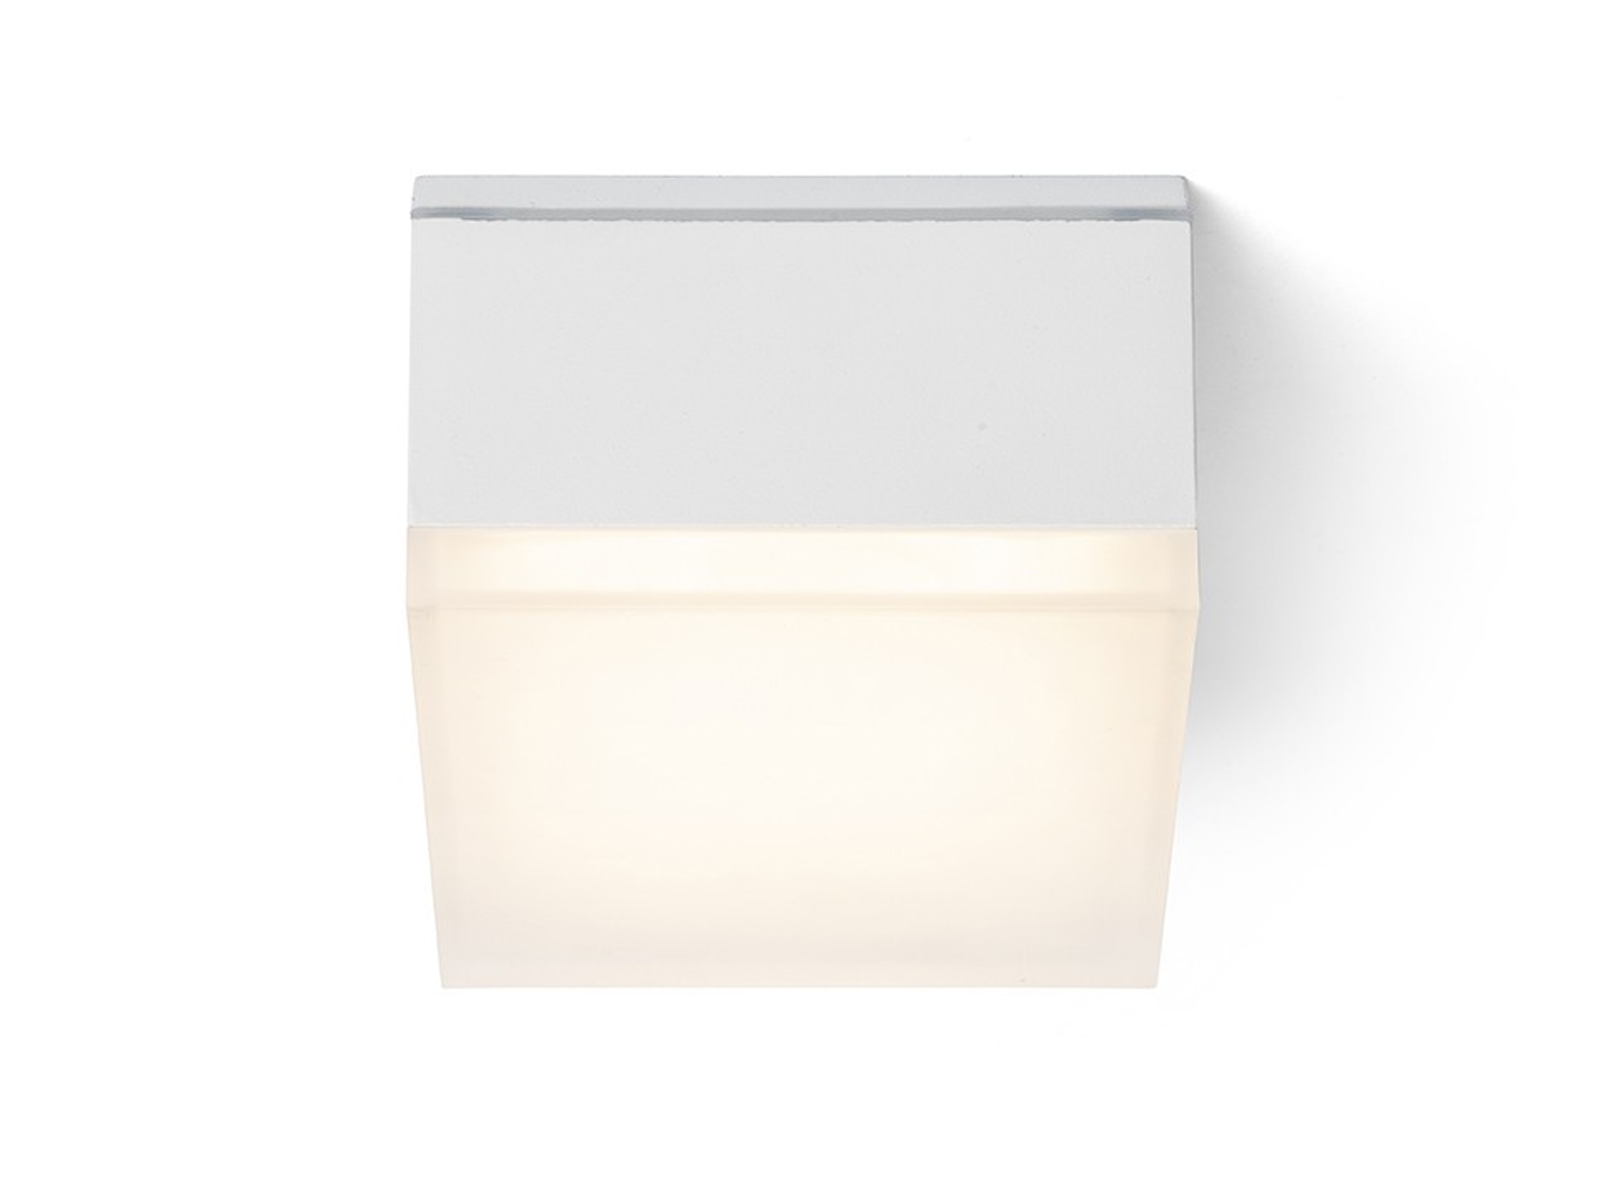 Stropní LED svítidlo ORIN SQ bílé, satinovaný akryl, 10W, 3000K, IP54, 10,8cm